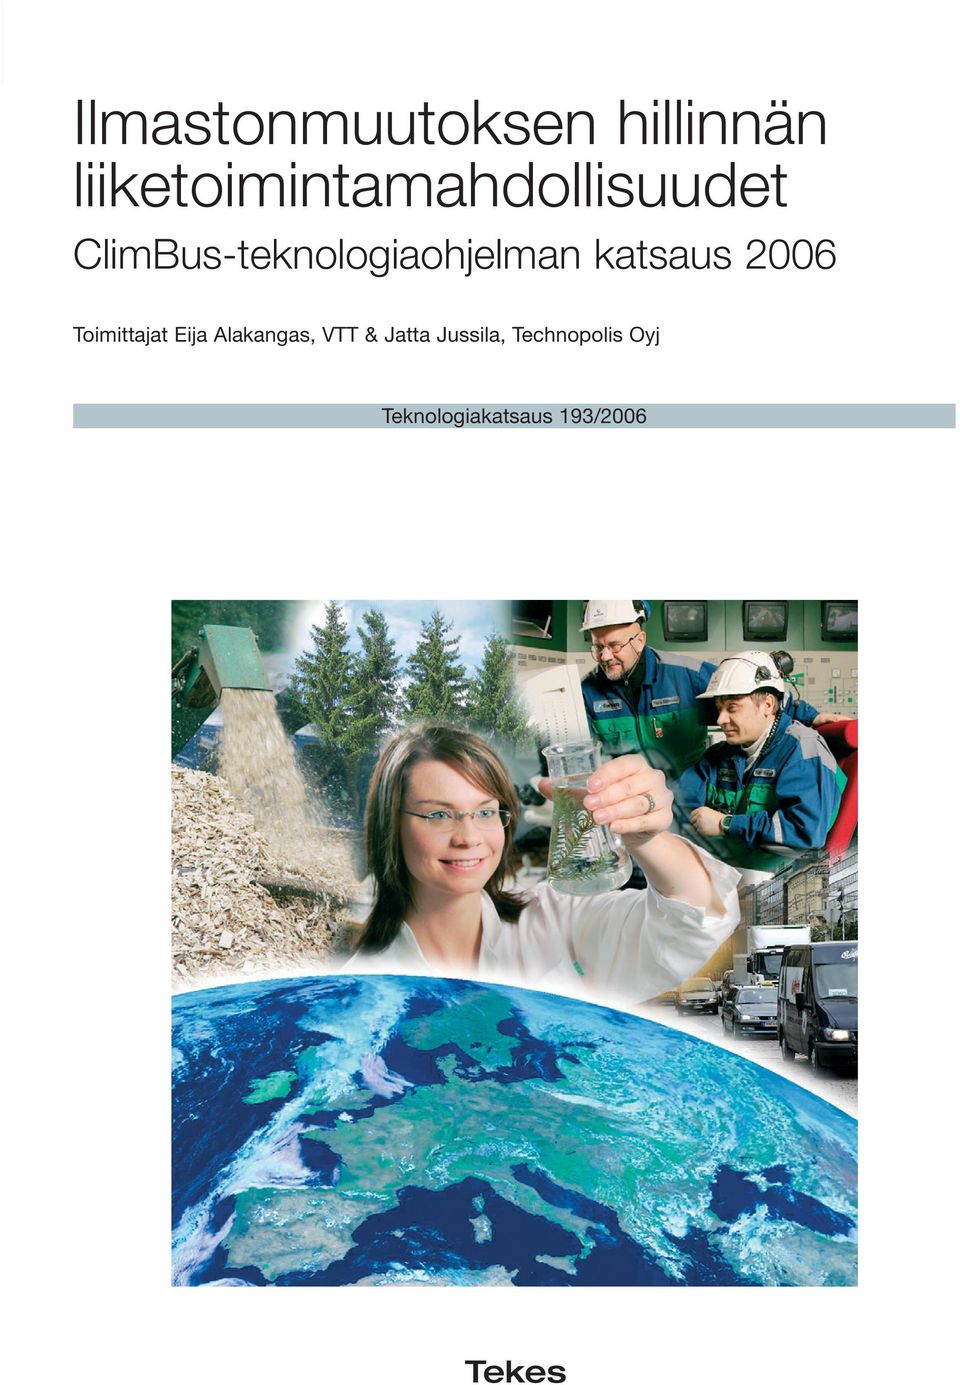 ClimBus-teknologiaohjelman katsaus 2006